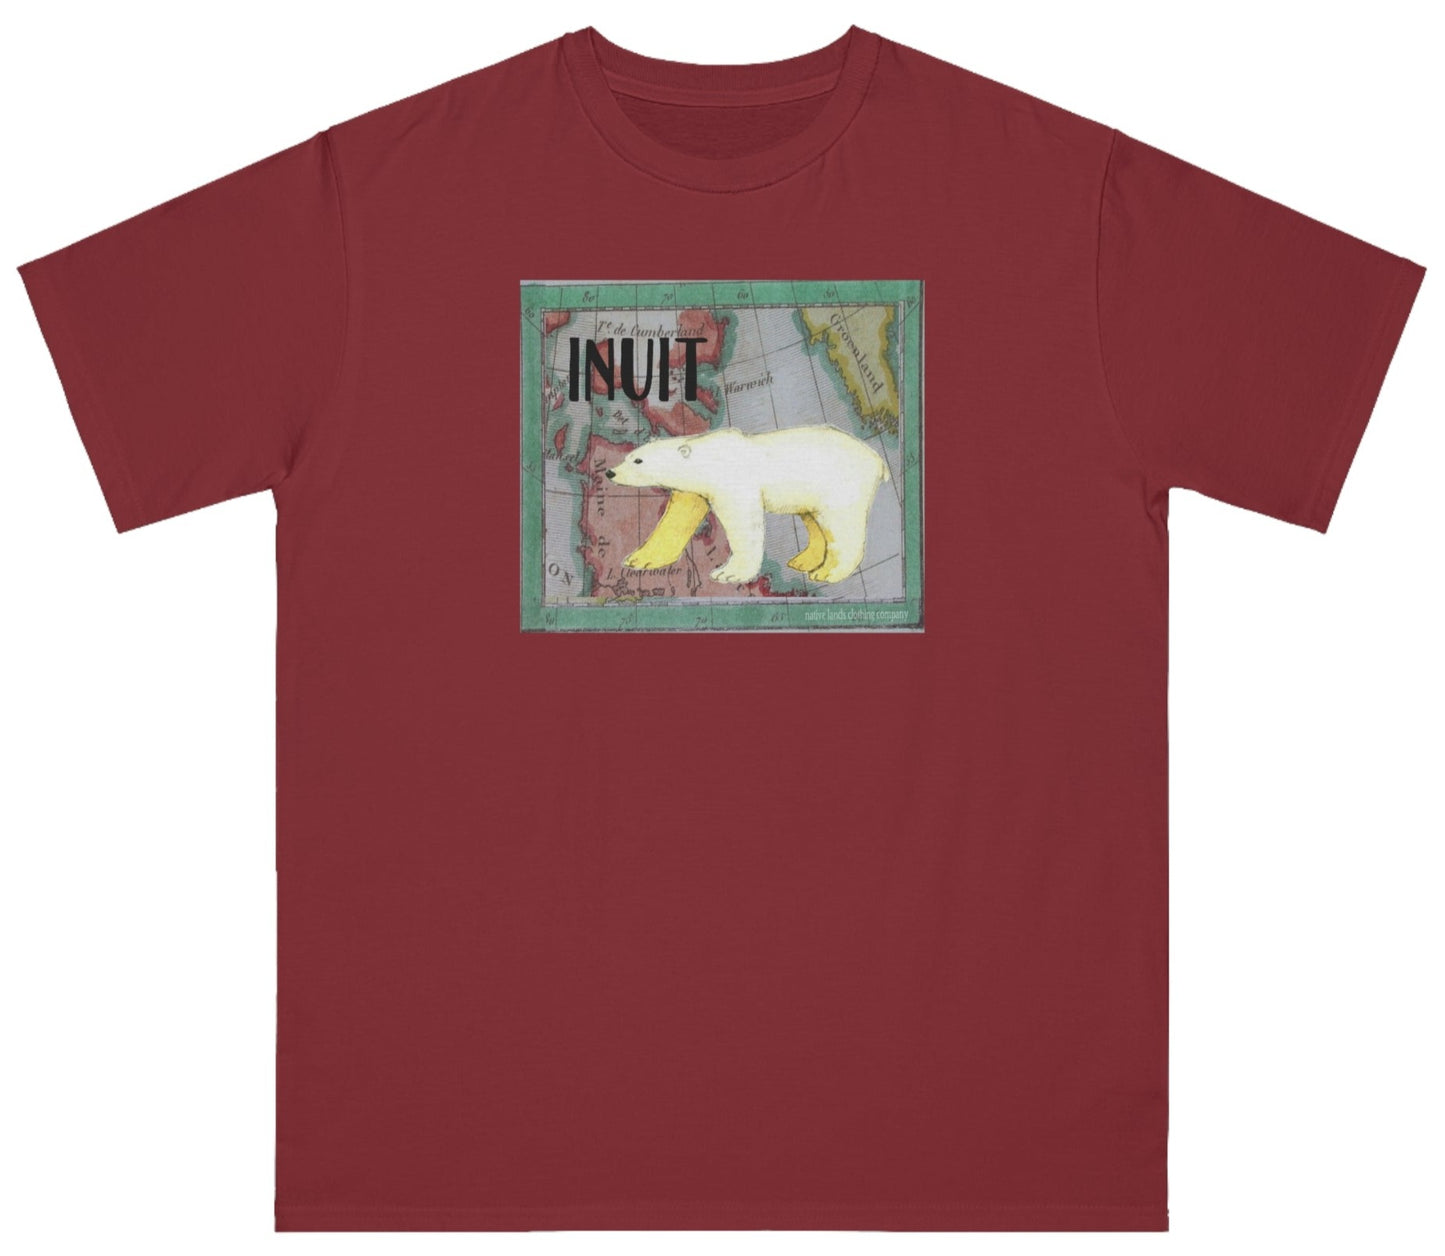 Bio-Inuit-Stamm-Shirt, Eisbär-Baumwolle, Indianer